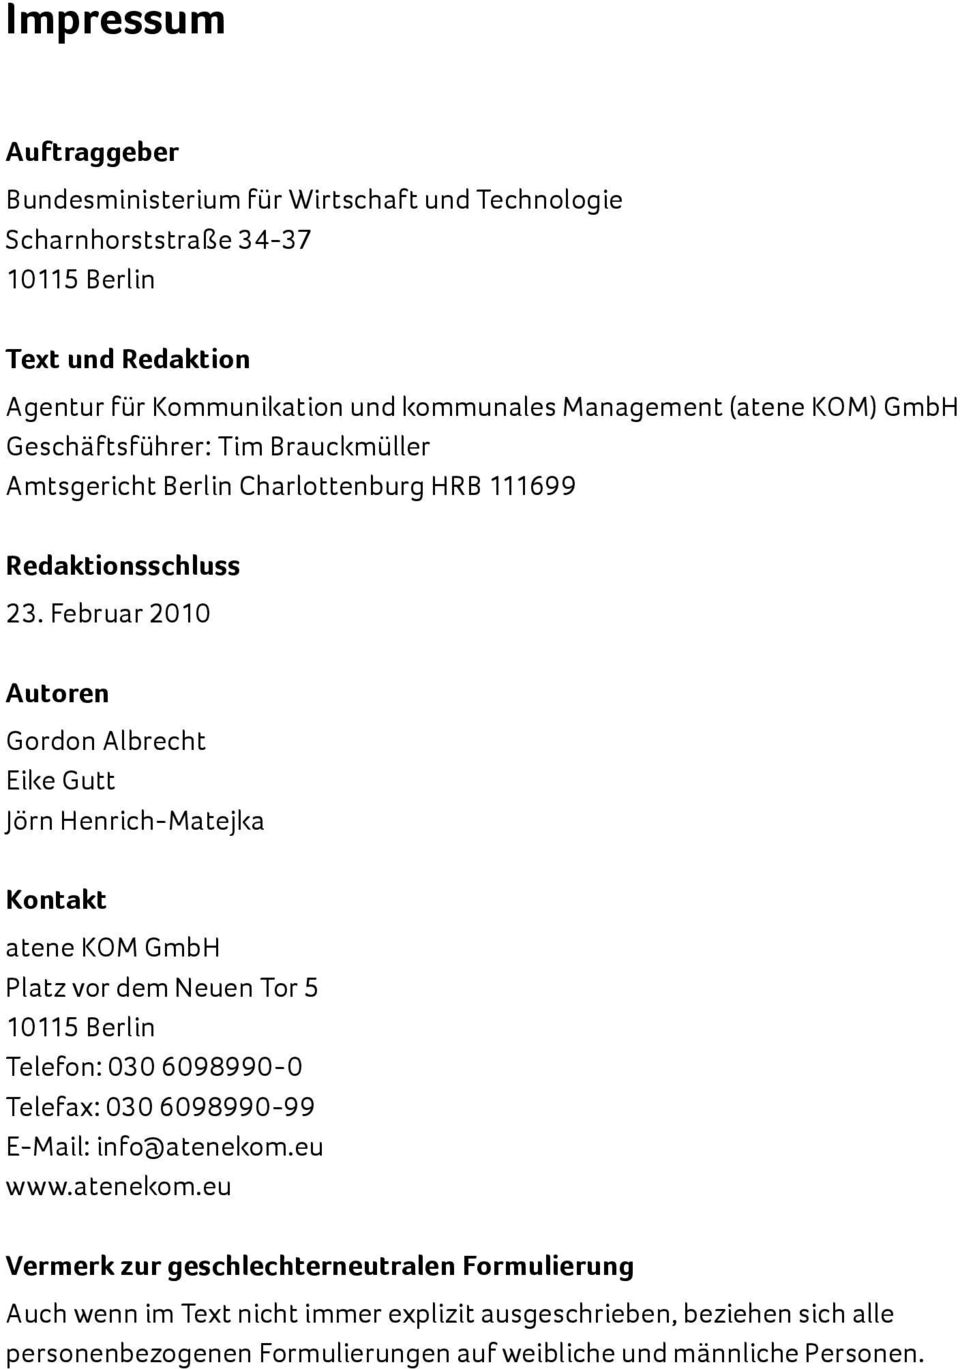 Februar 2010 Autoren Gordon Albrecht Eike Gutt Jörn Henrich-Matejka Kontakt atene KOM GmbH Platz vor dem Neuen Tor 5 10115 Berlin Telefon: 030 6098990-0 Telefax: 030 6098990-99